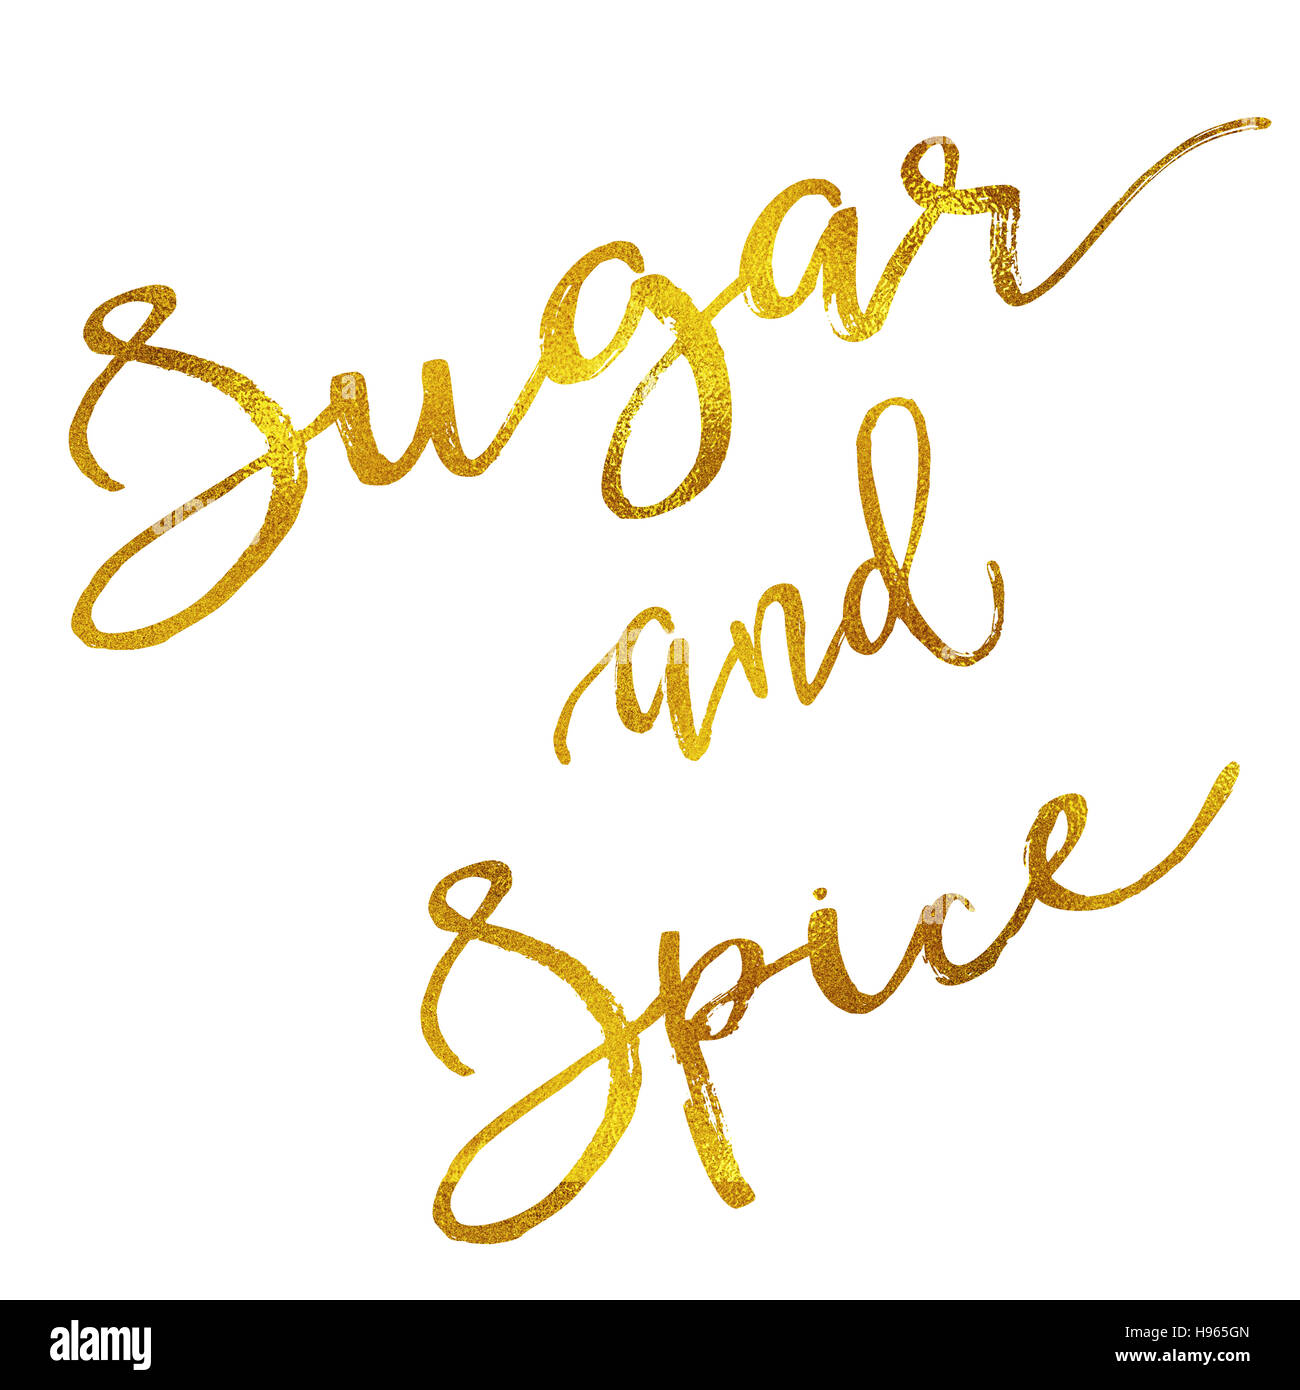 Zucchero e spezie Faux oro lamina metallica preventivo motivazionale isolato Foto Stock